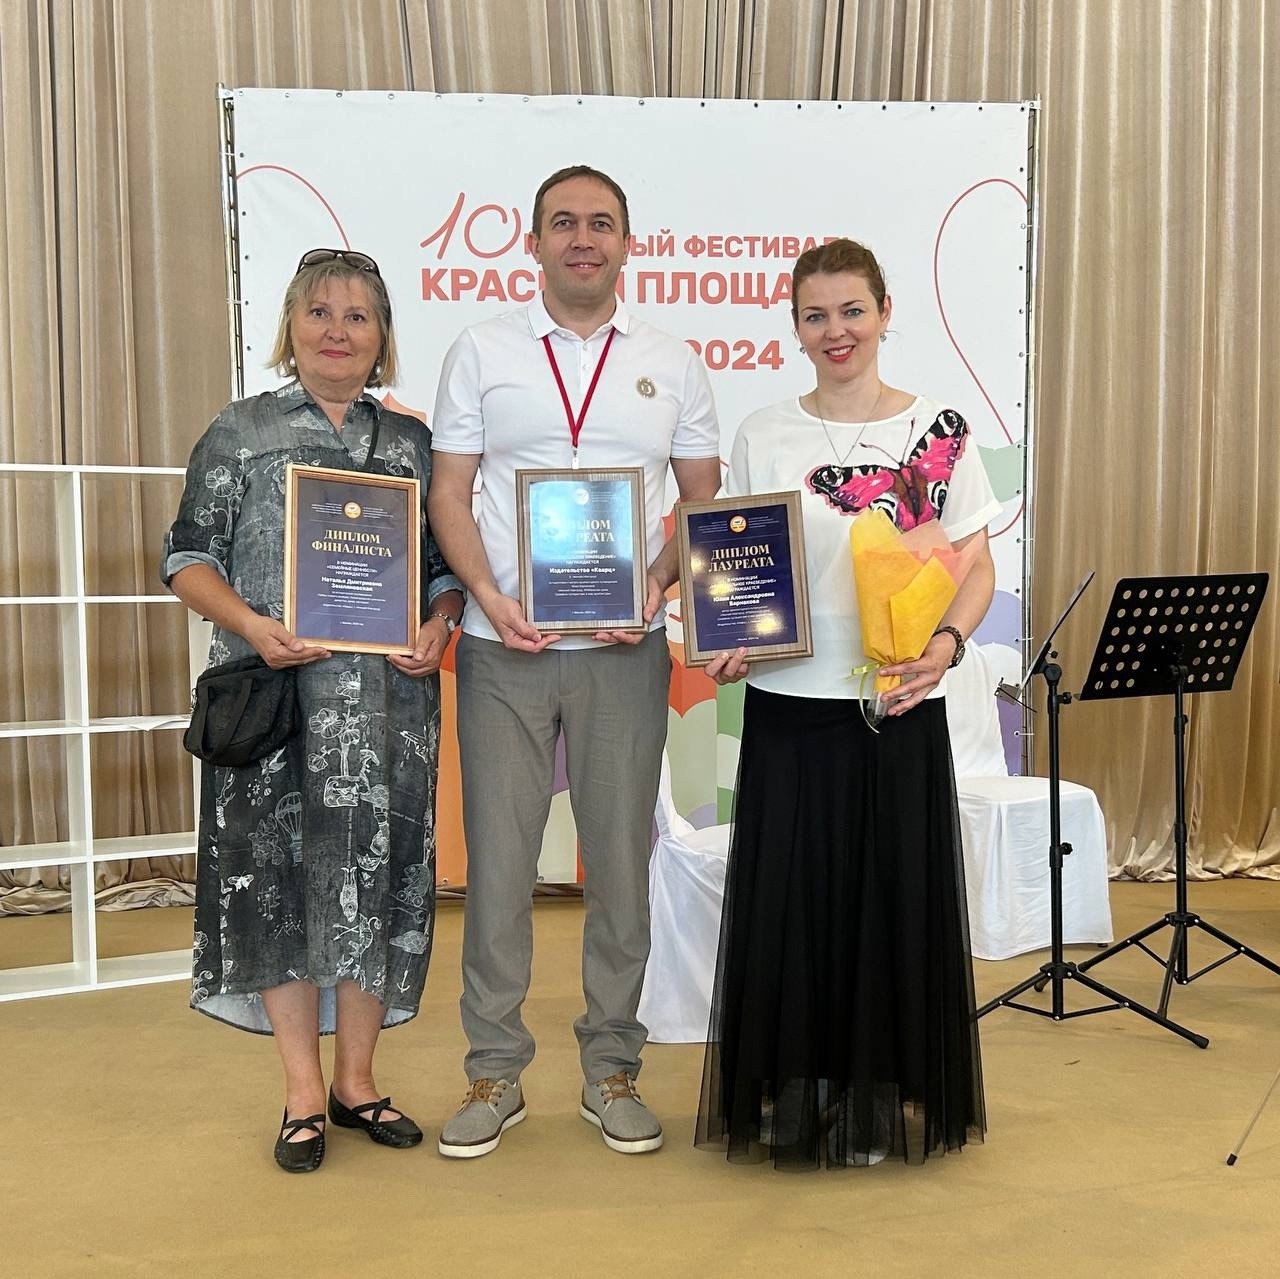 Книги, изданные при поддержке правительства Нижегородской области, получили признание на книжном фестивале «Красная площадь»